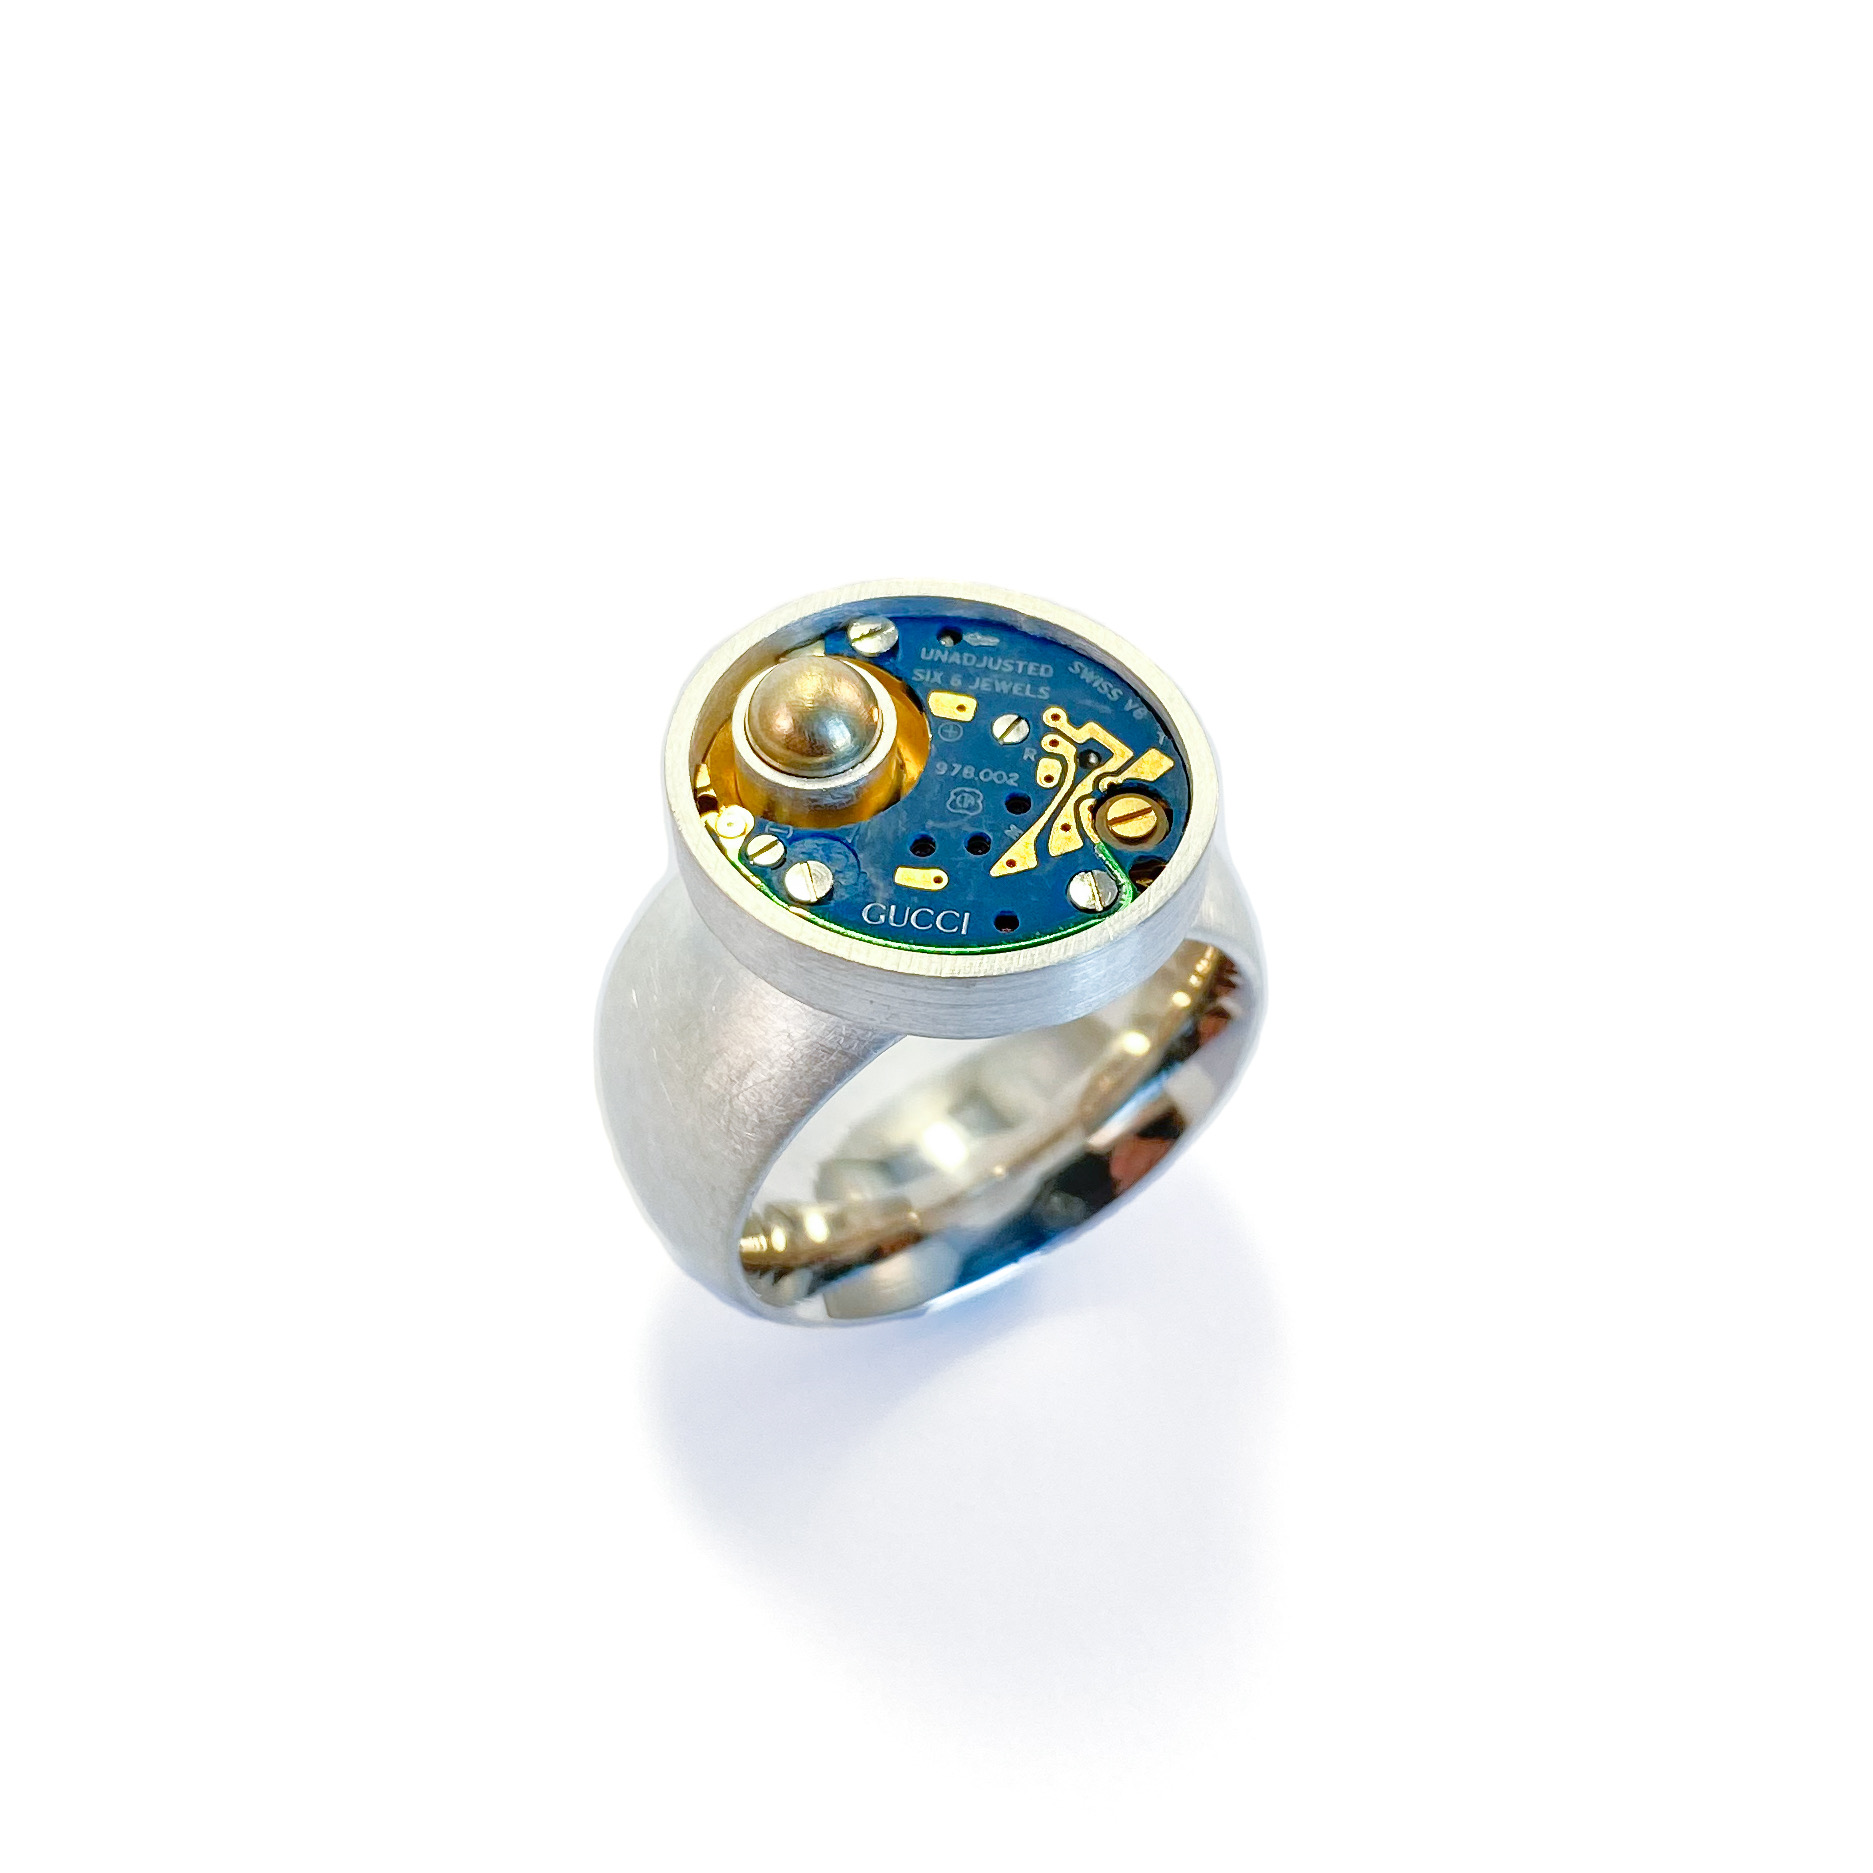 Ring met quartz uurwerk “Gucci” - IK sieraden